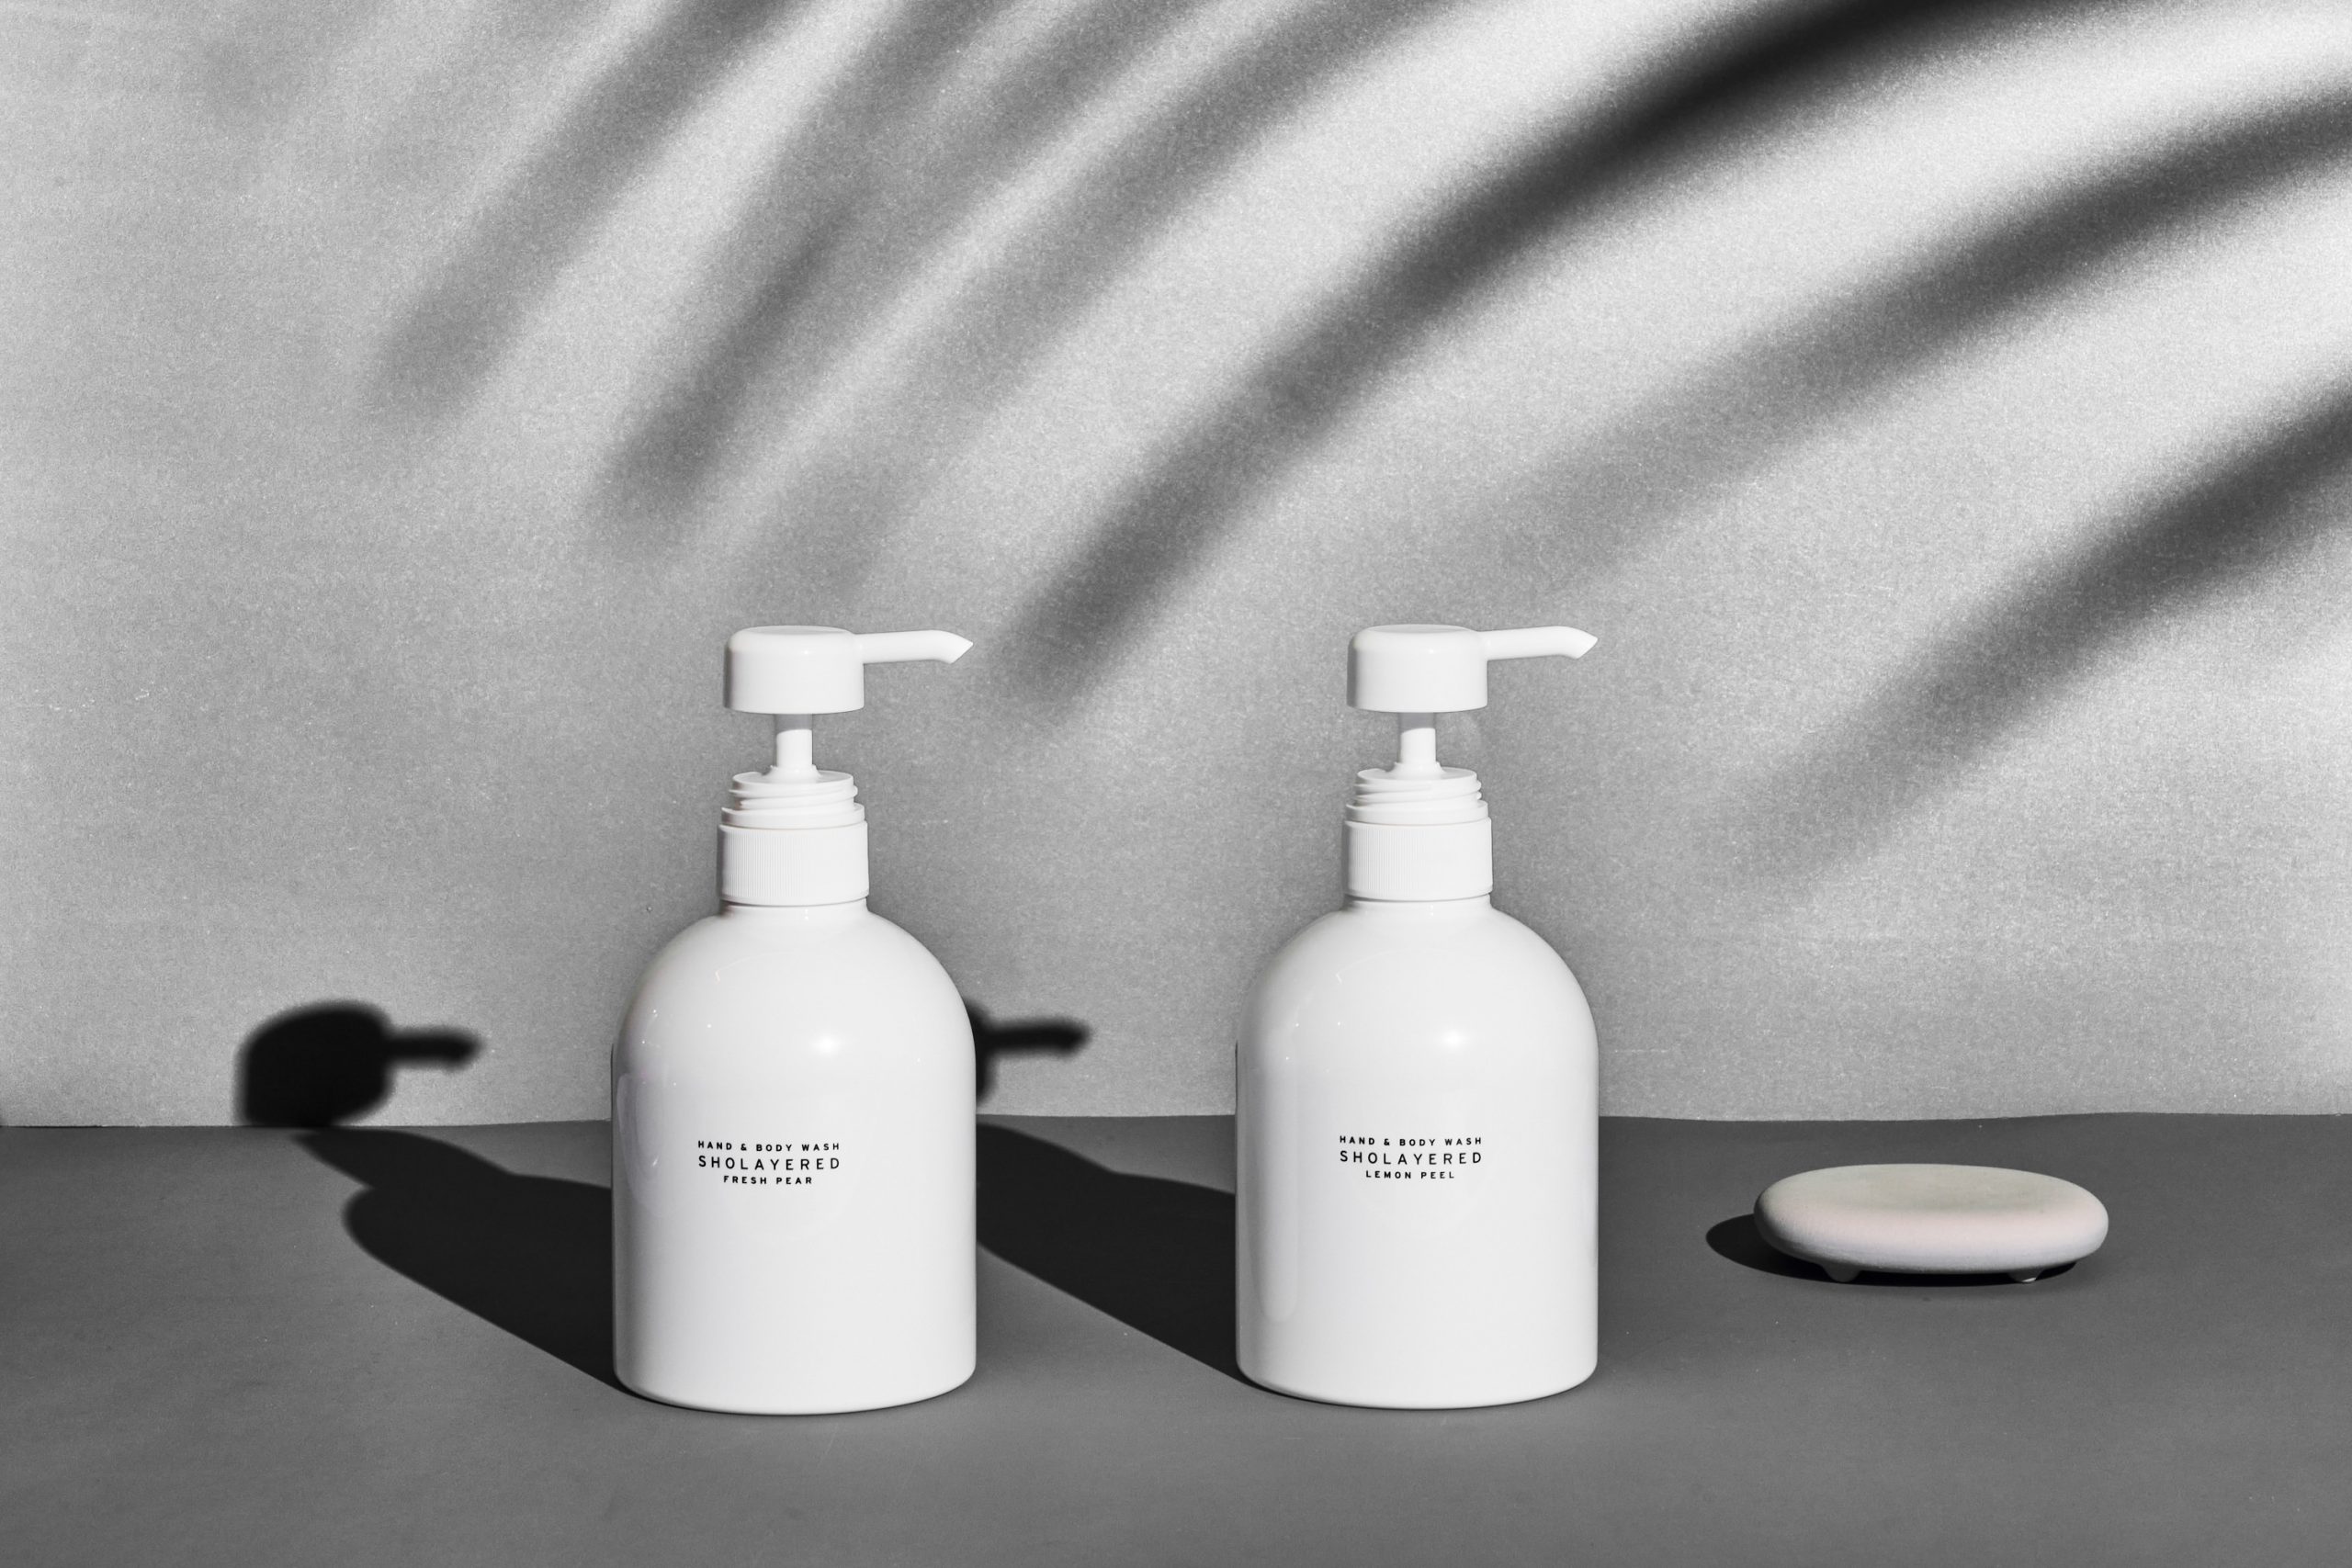 Sữa tắm Nhật Bản Sholayered giúp chăm sóc kỹ càng làn da của bạn